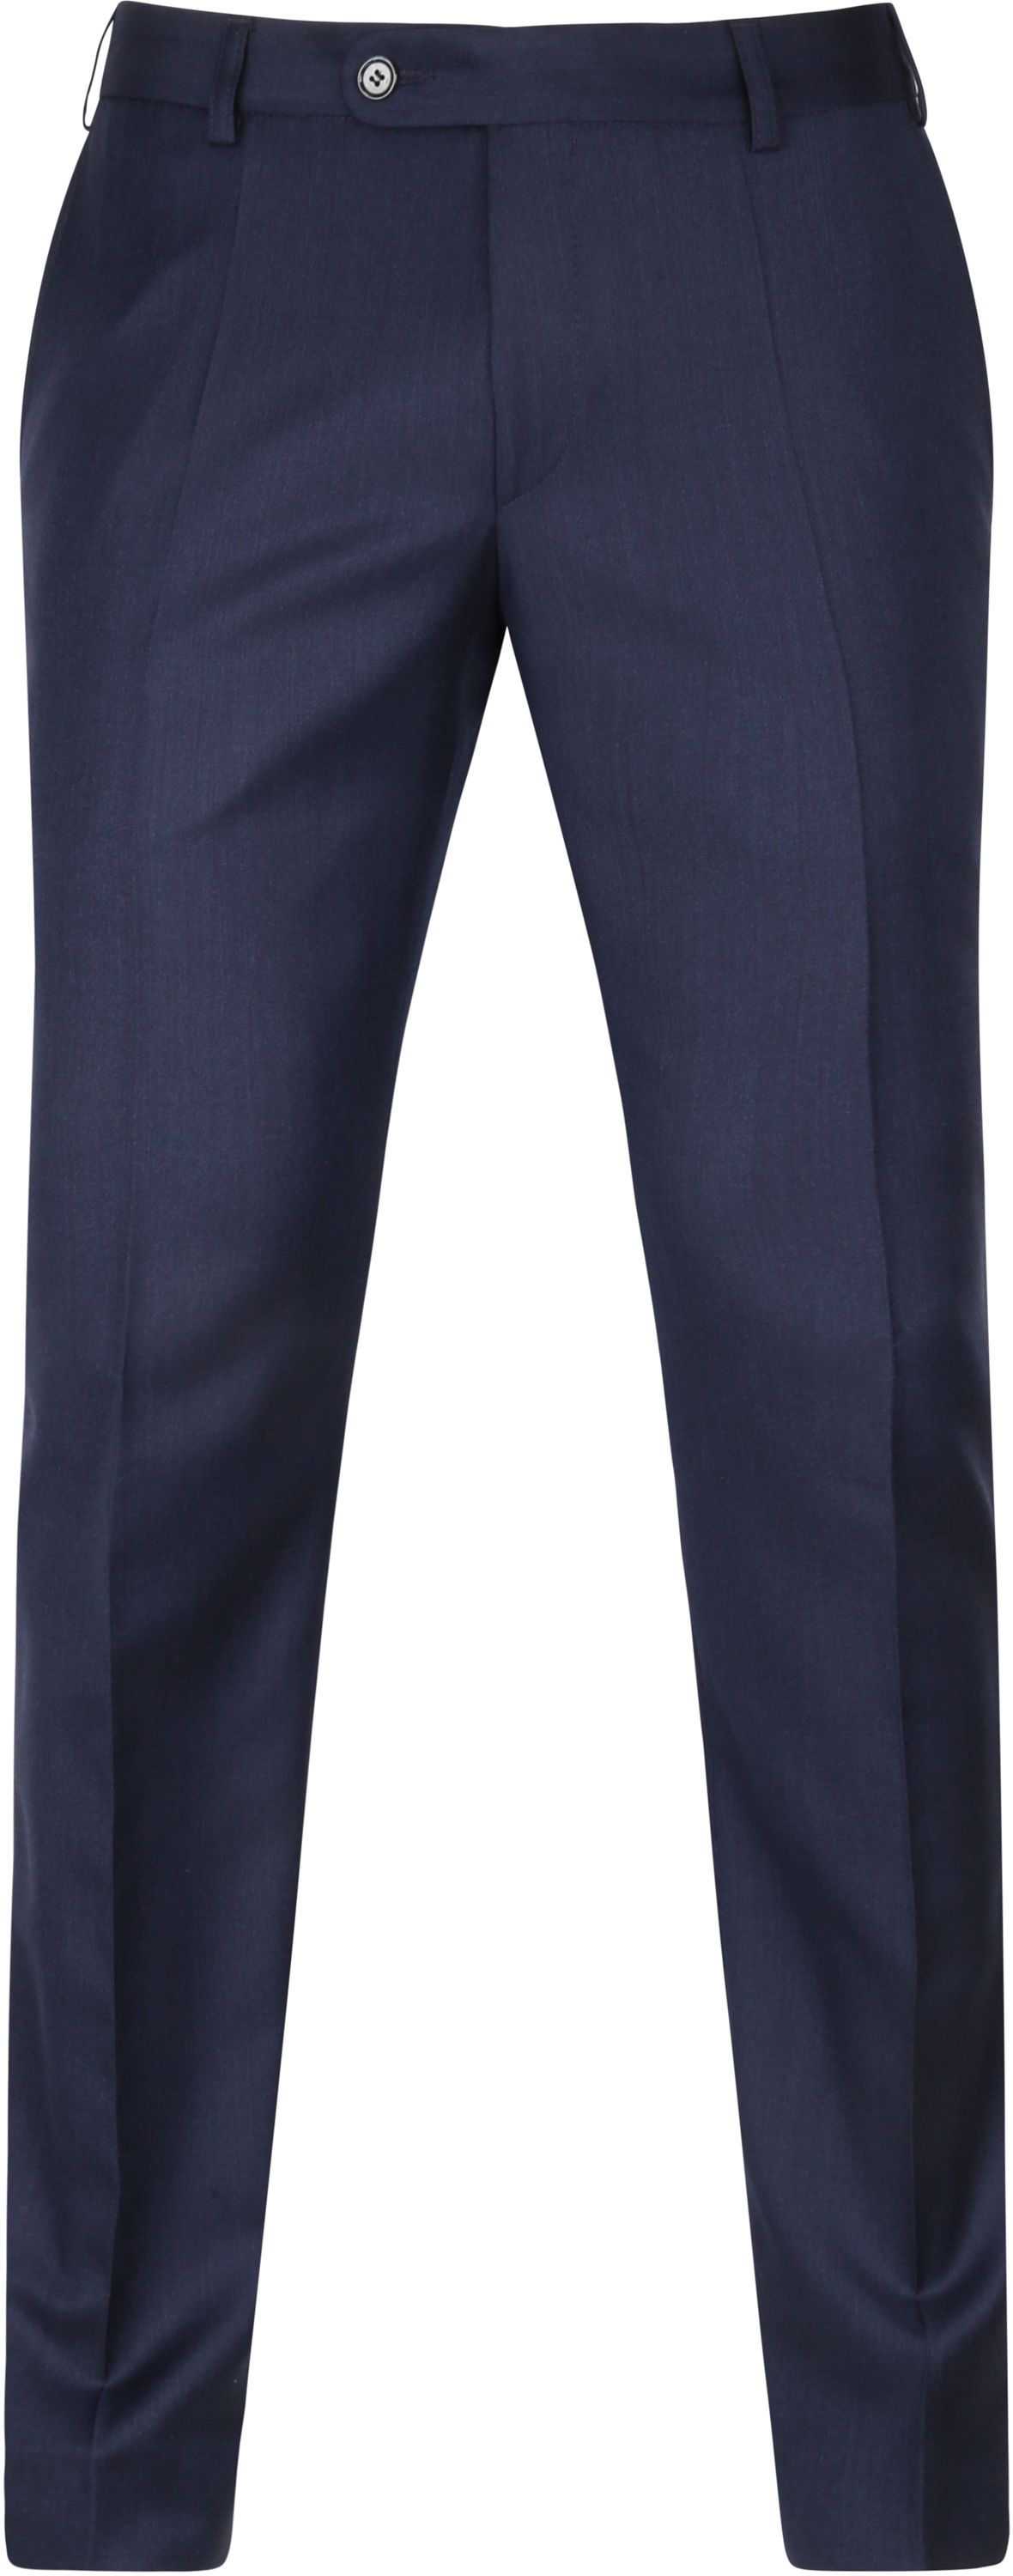 Suitable Pantalon Evans Navy Dark Blue Blue size W 30/31